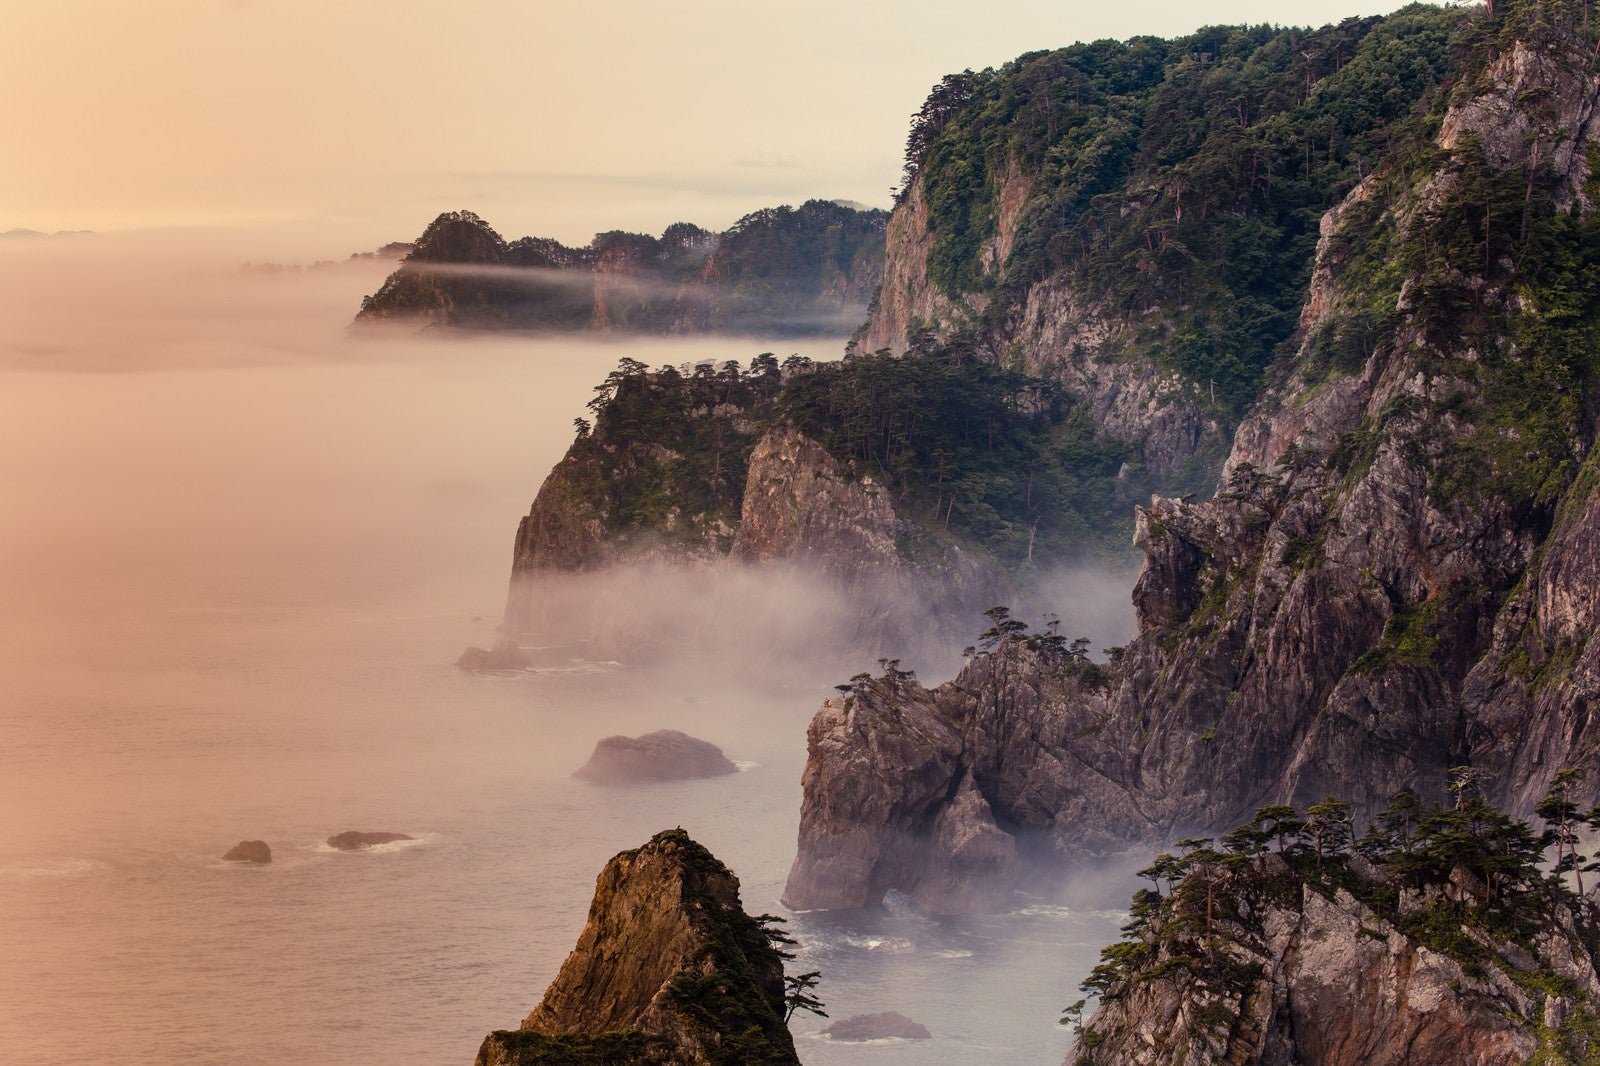 「朝霧残る北山崎の夜明け」の写真